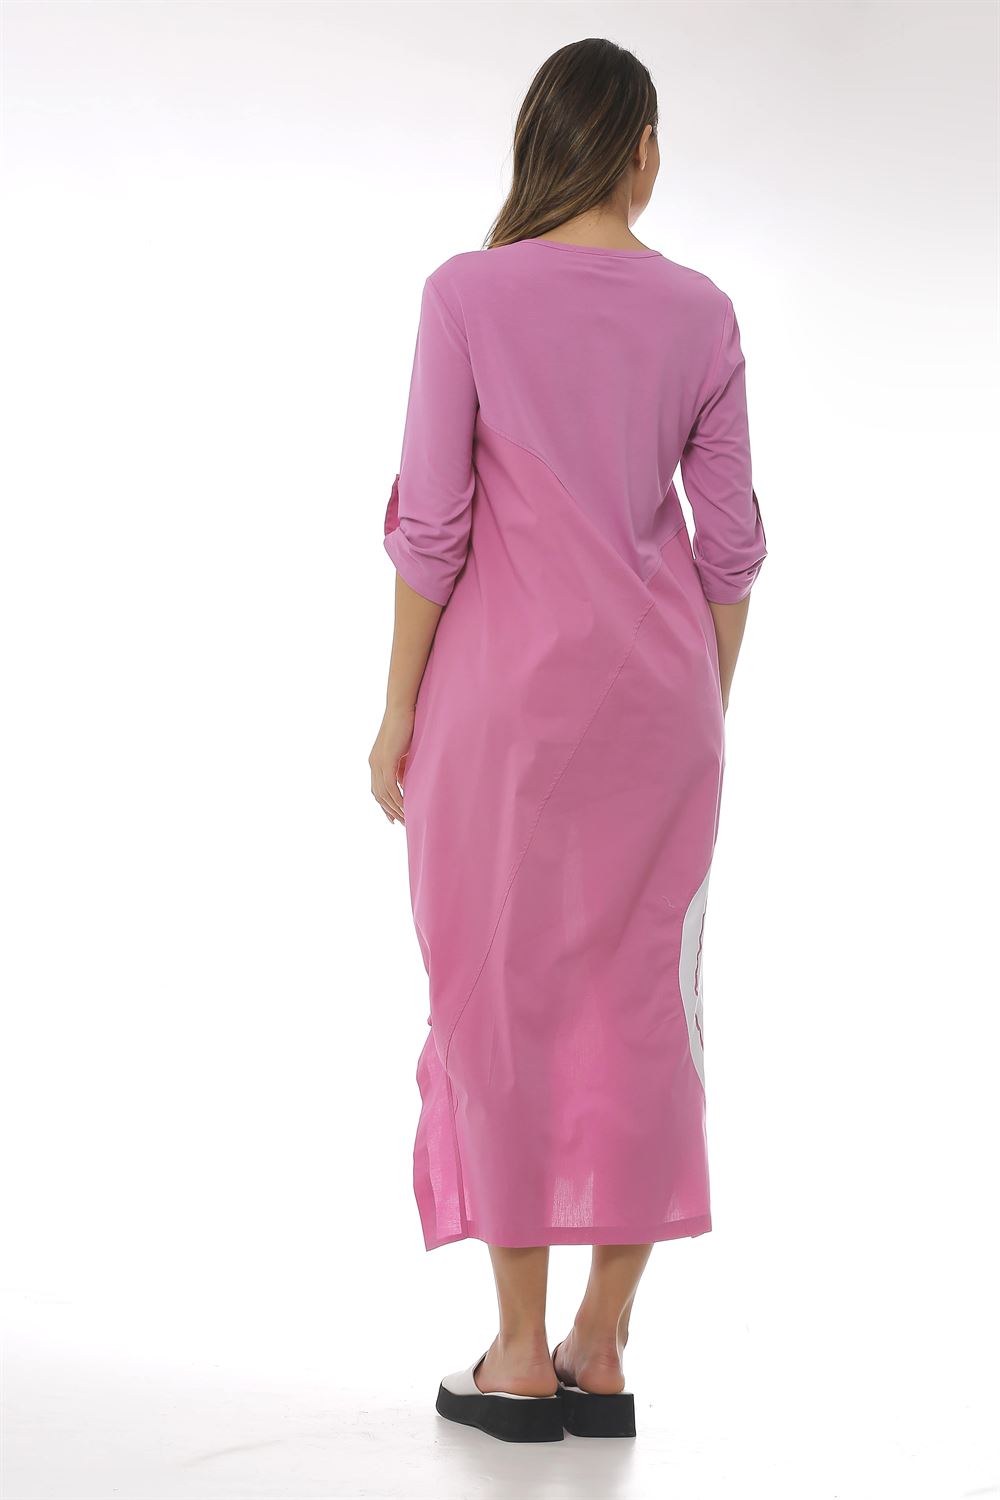 Garni Kumaş Detaylı Asimetrik Kesim Poplin Elbise-Pembe